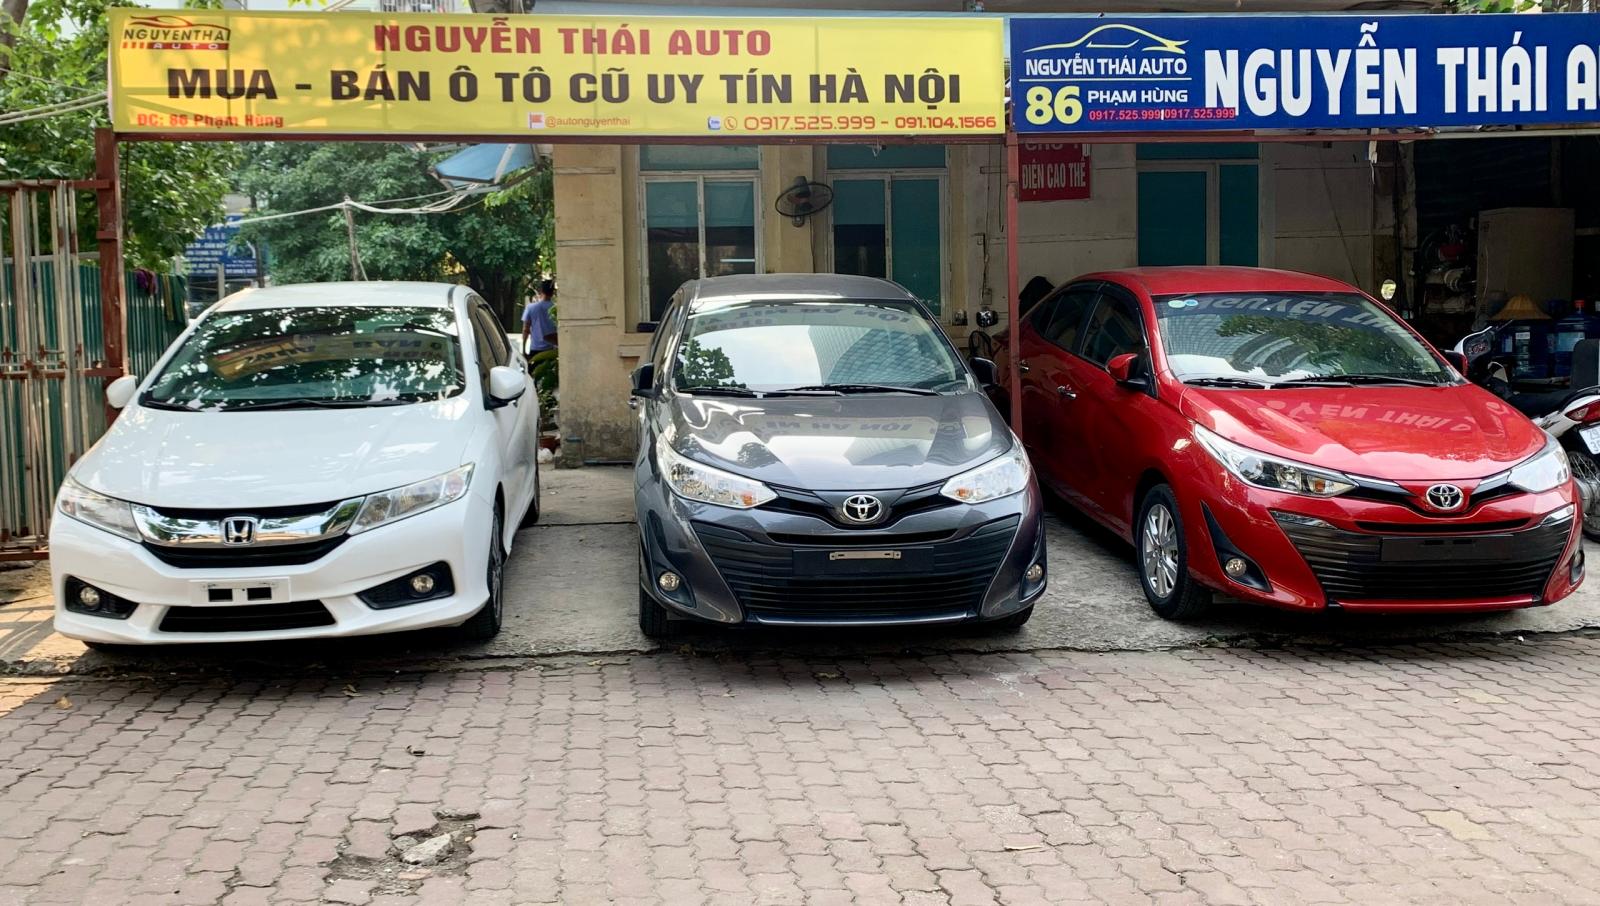 Nguyễn Thái Auto